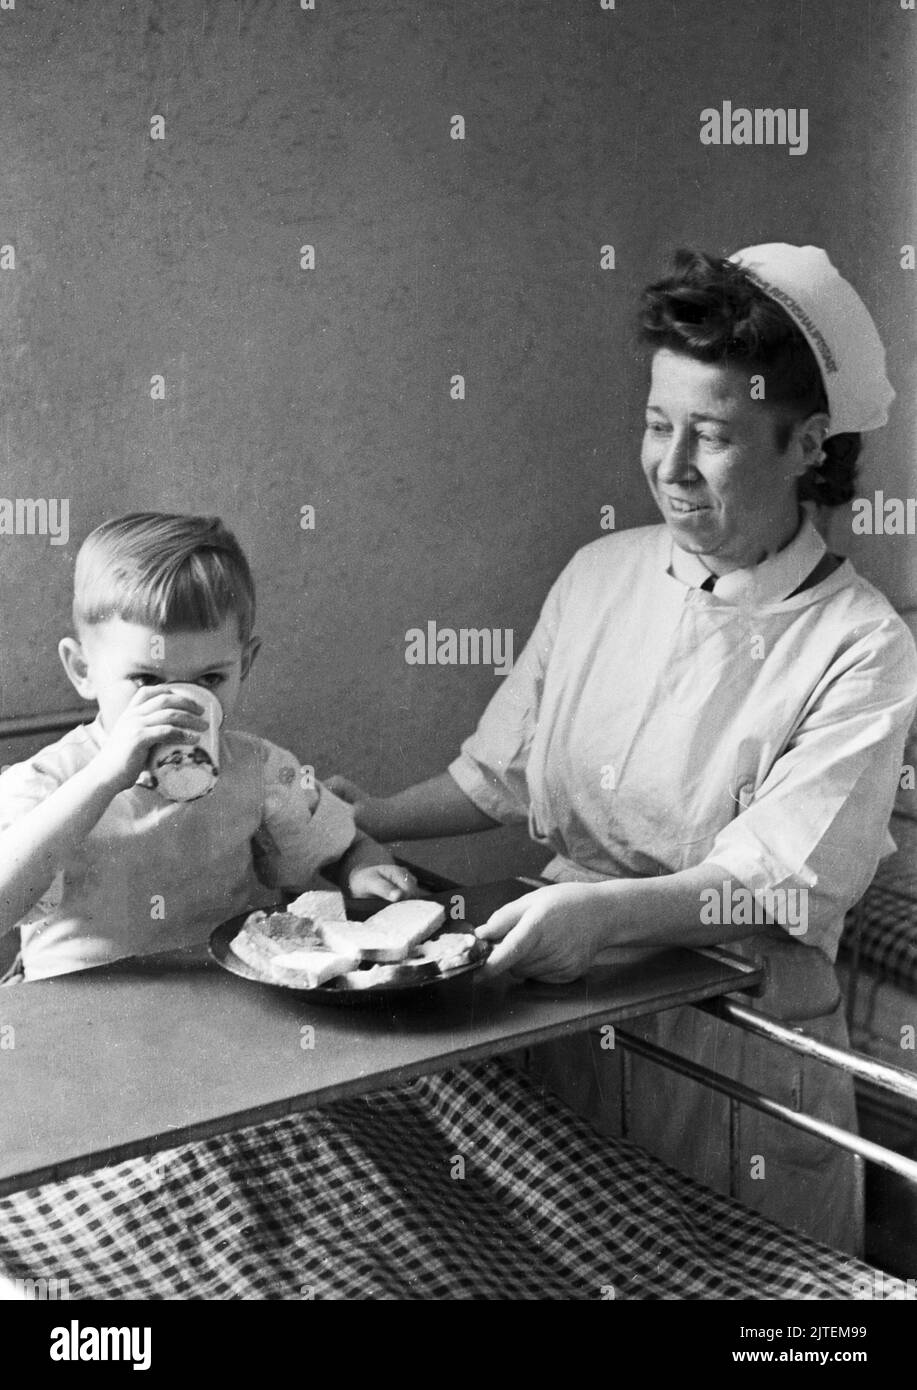 Kampf der Tuberkulose im TBC Kinderkrankenhaus in Neukölln, hier eine Krankenschwester beim Frühstück mit einem kleinen Jungen, Berlin, Deutschland 1947. Stock Photo